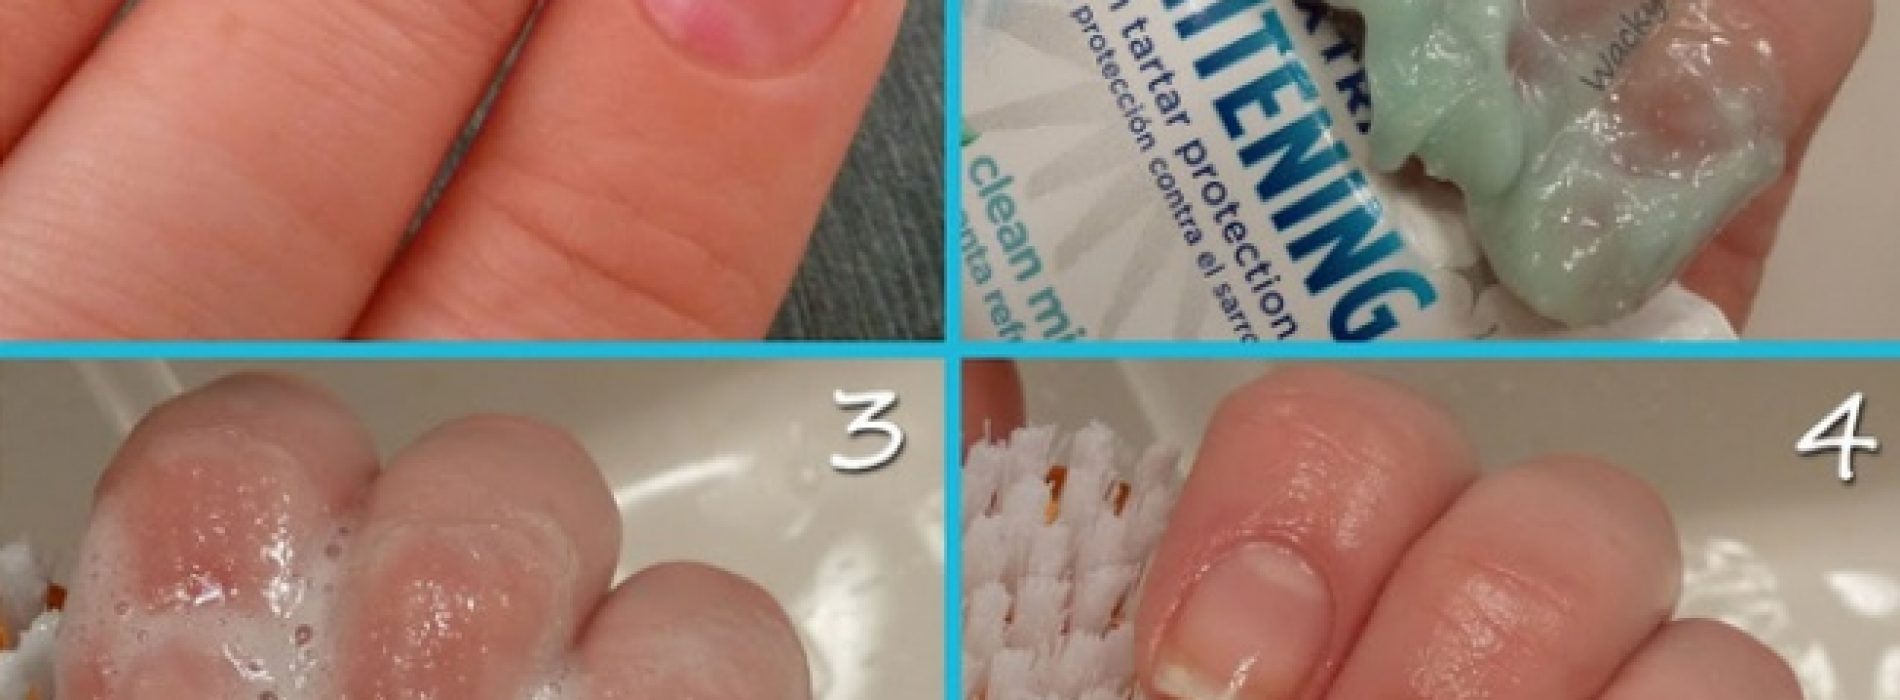 Als je tandpasta op je vingernagels smeert, volgt er een VERRASSEND effect!